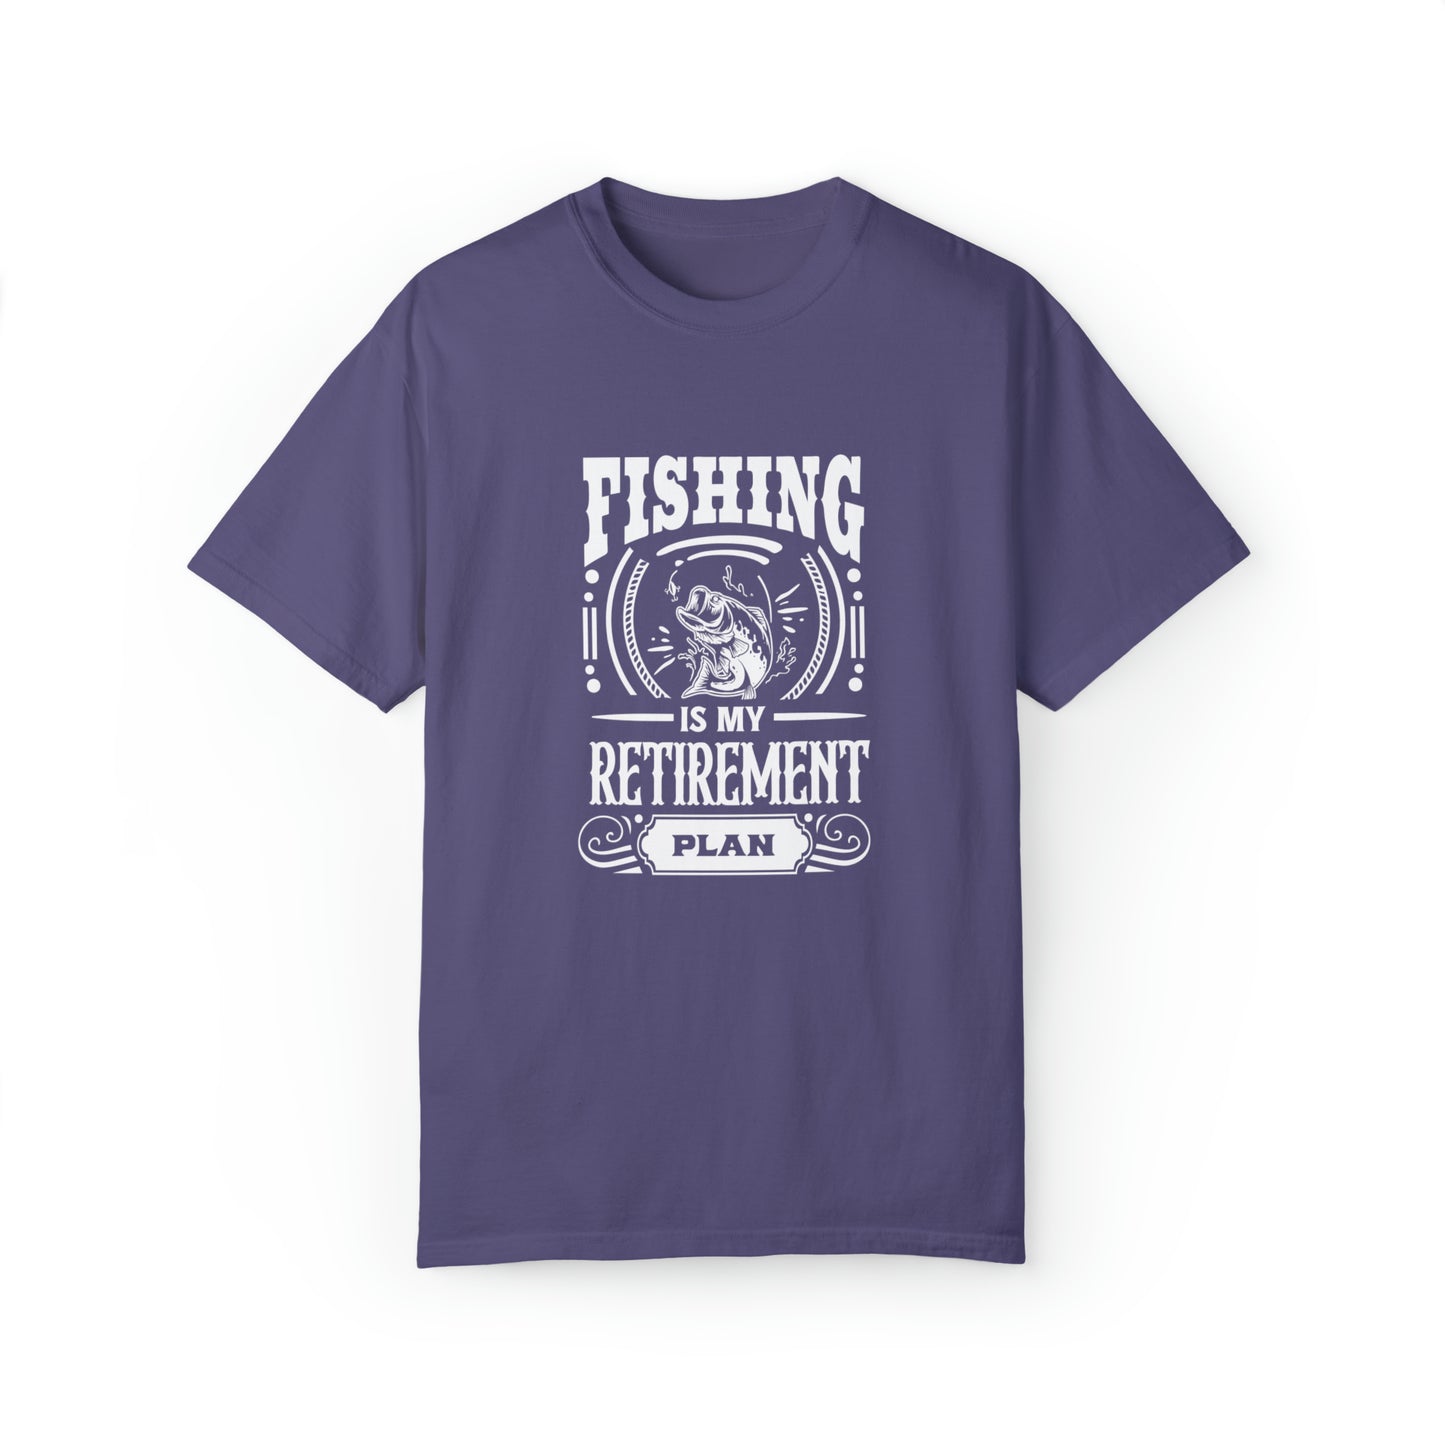 La pesca es mi plan de jubilación camiseta